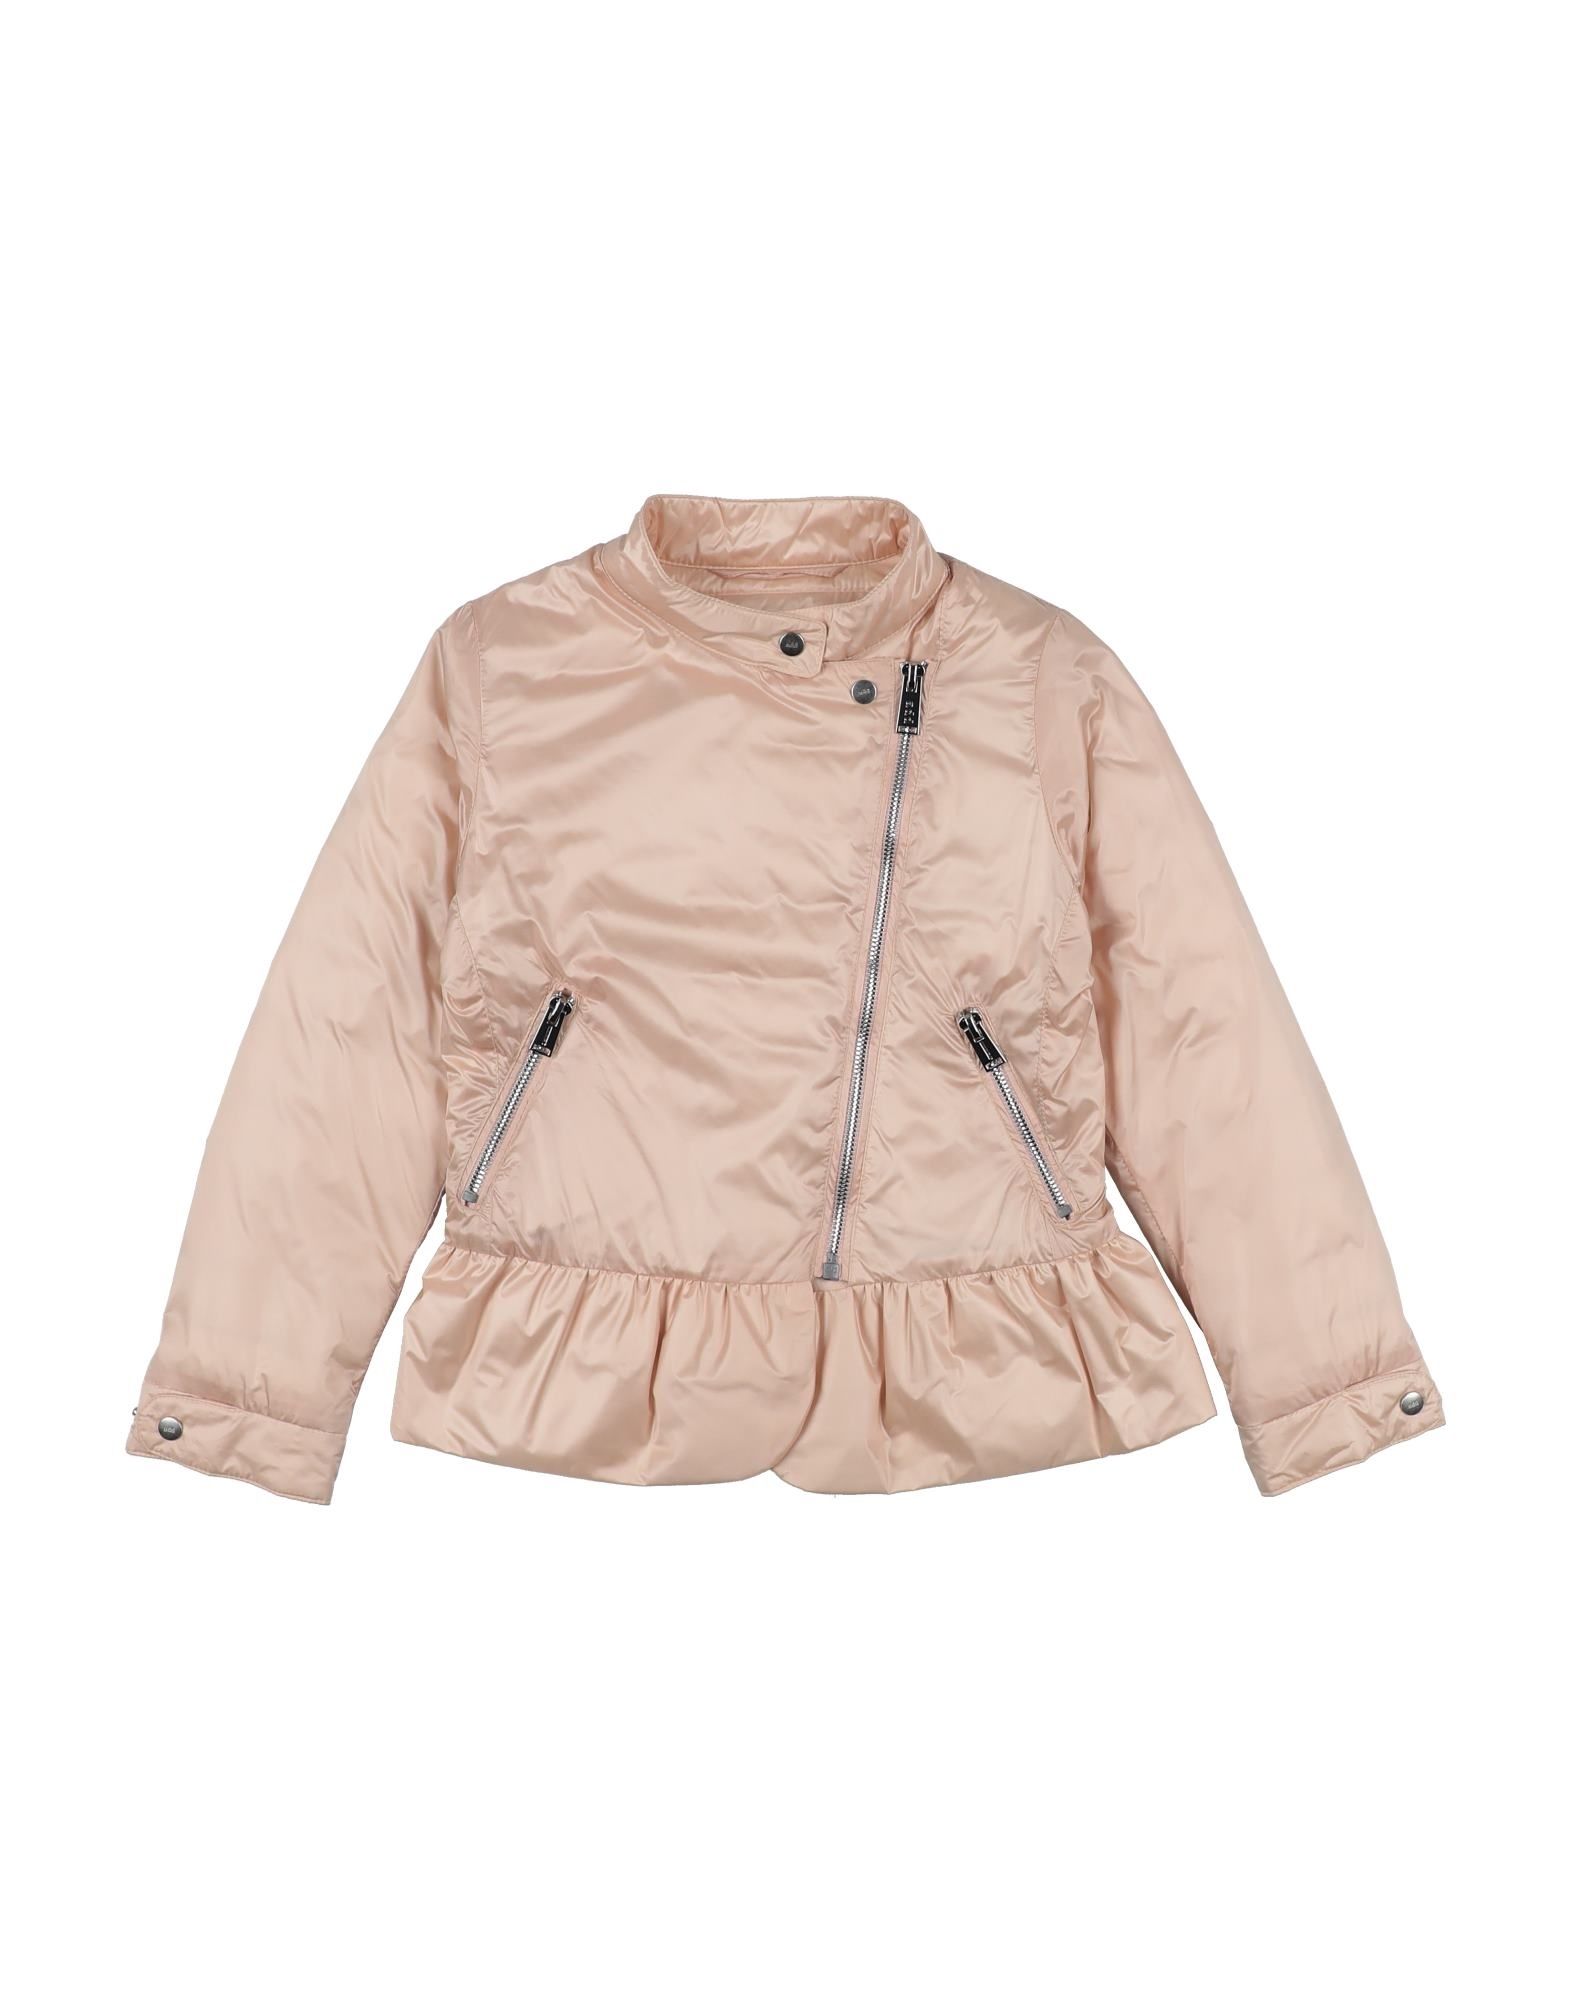 Add Kids' Down Jackets In Light Pink